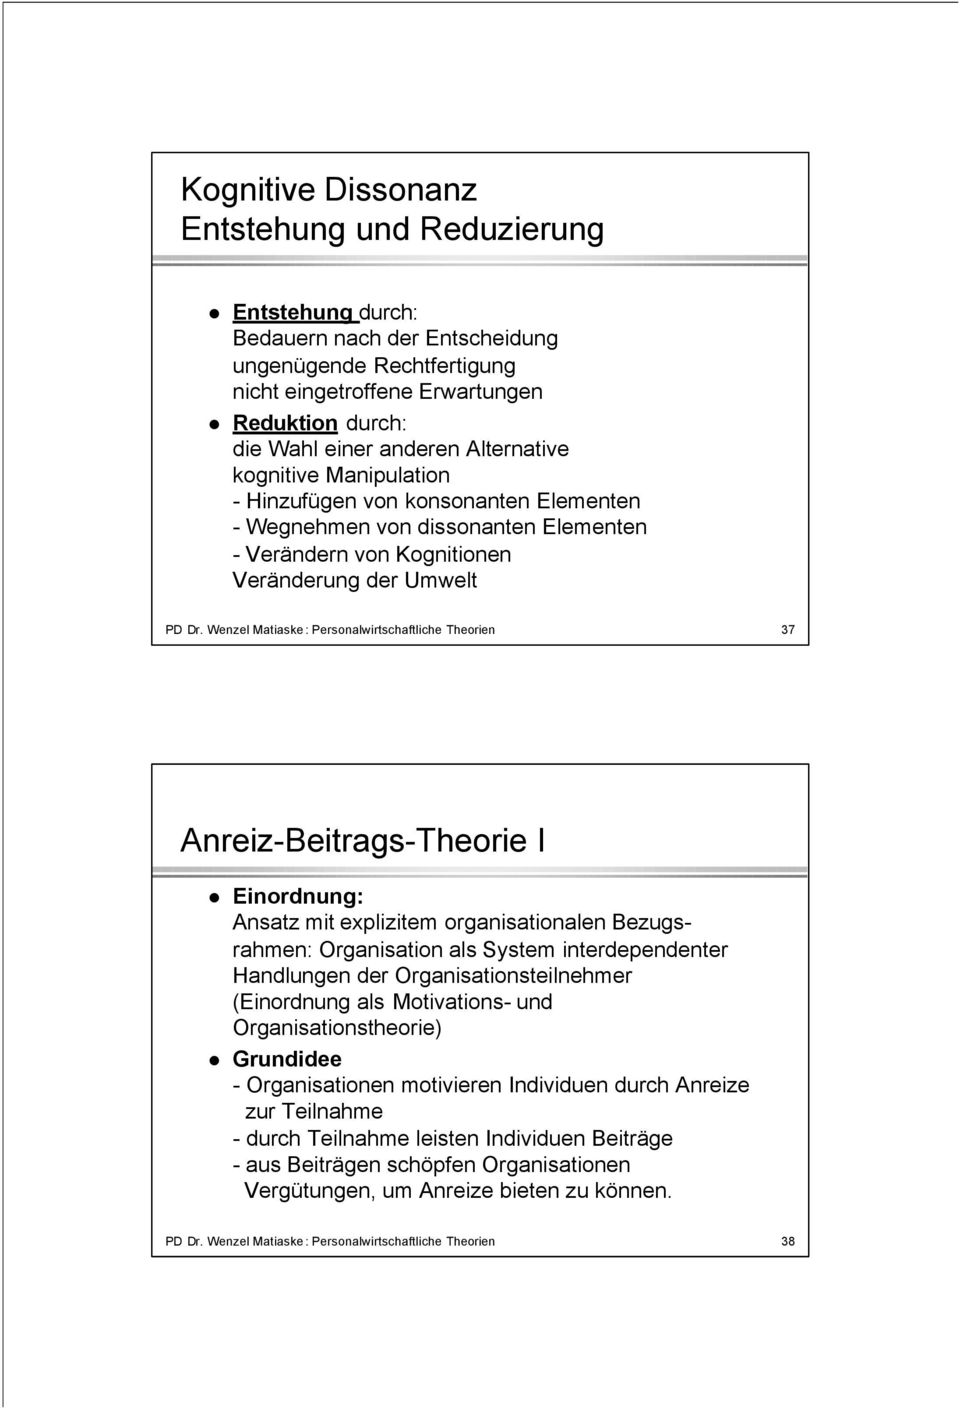 Wenzel Matiaske: Personalwirtschaftliche Theorien 37 Anreiz-Beitrags-Theorie I Einordnung: Ansatz mit explizitem organisationalen Bezugsrahmen: Organisation als System interdependenter Handlungen der